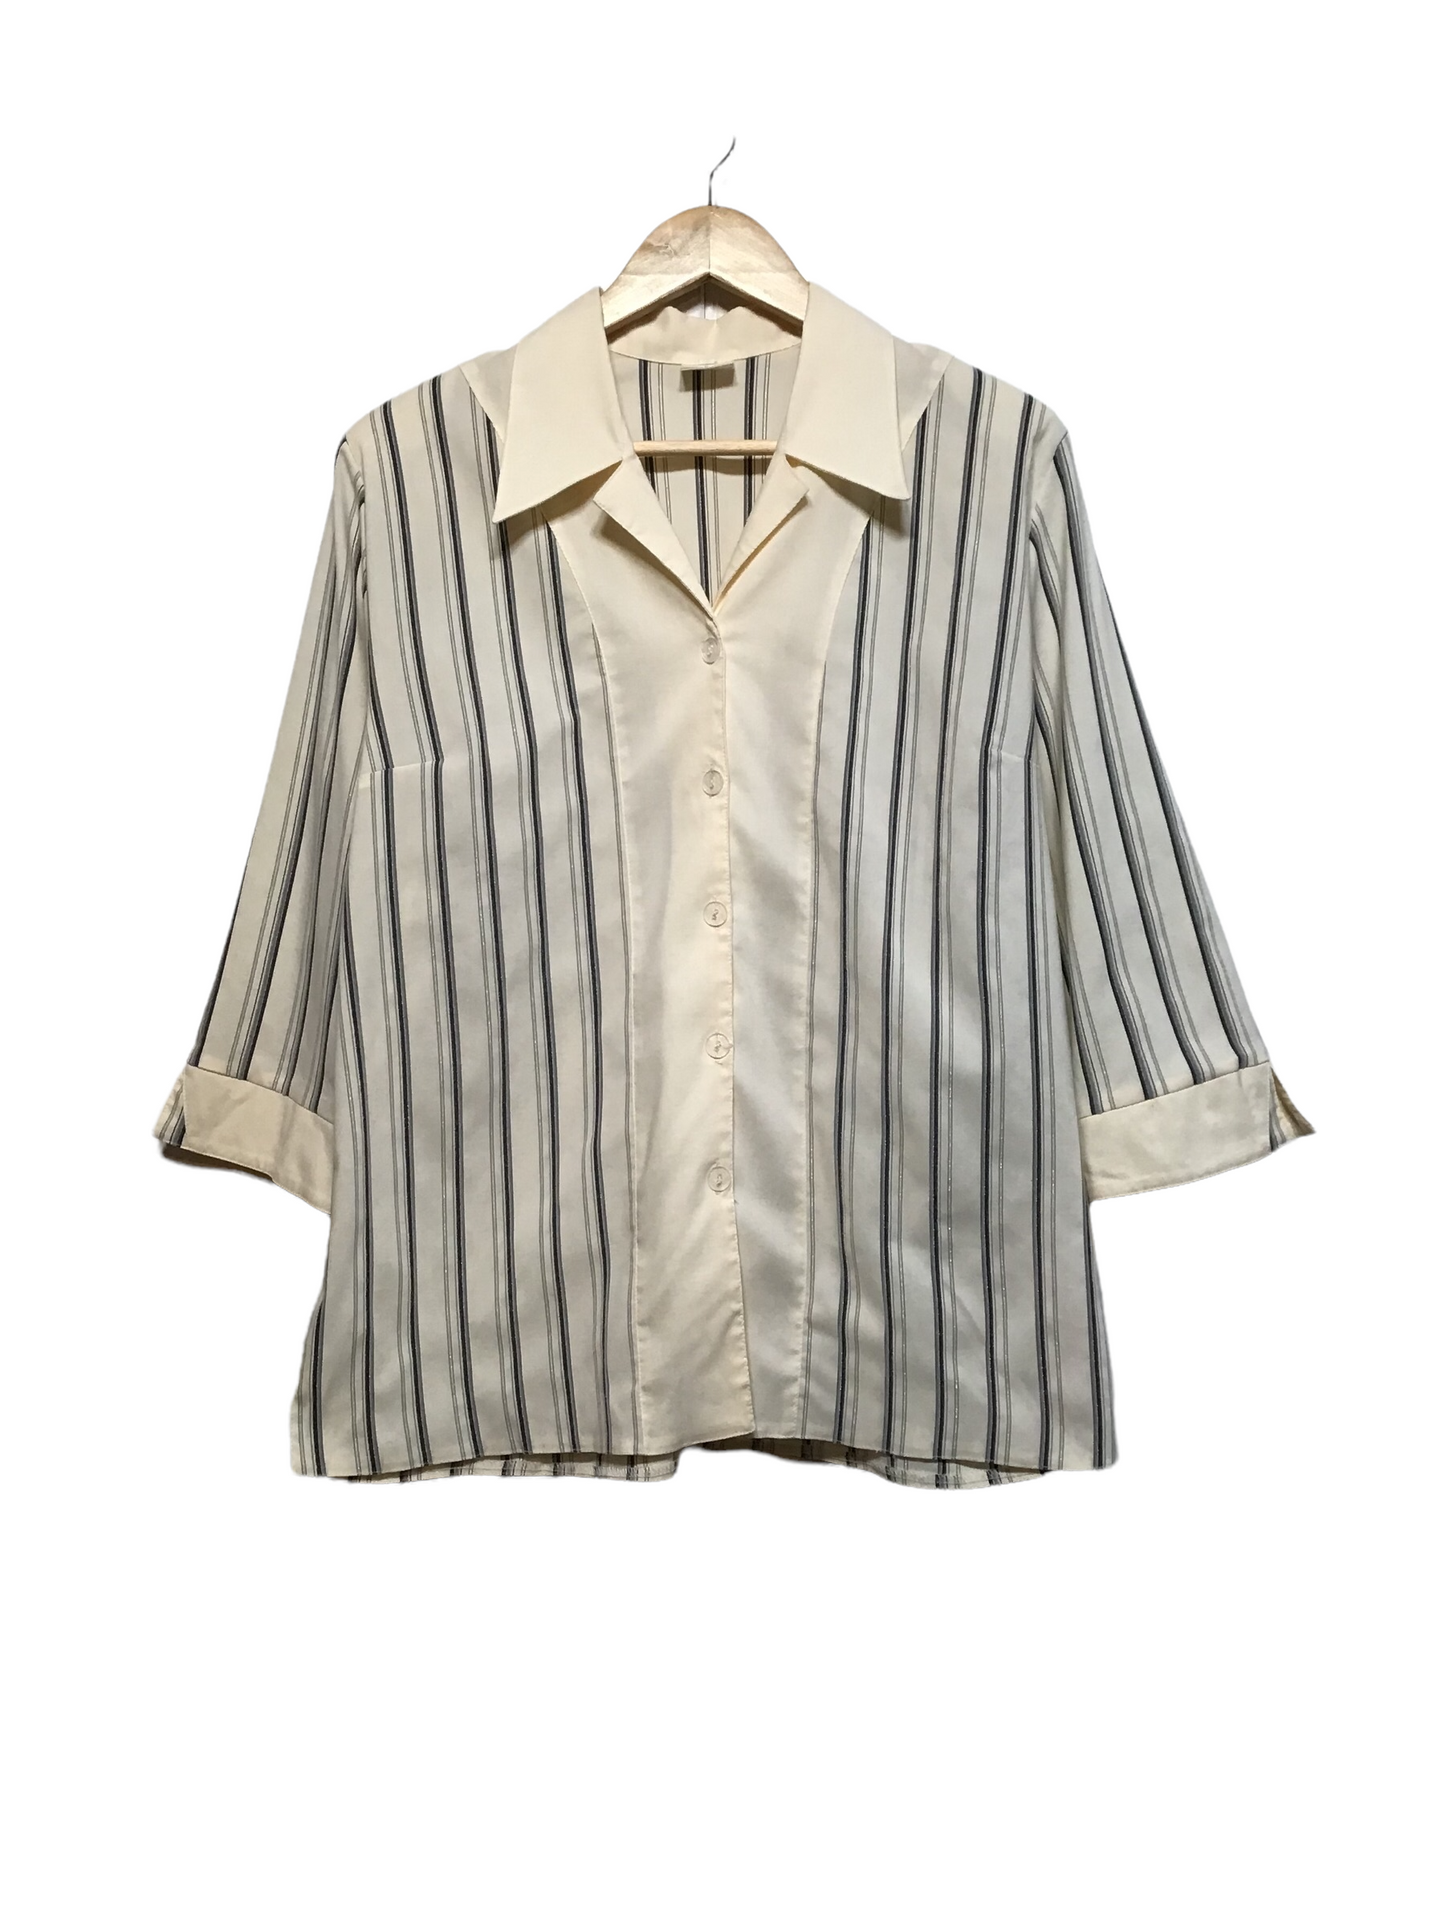 Striped Blouse (Size L)